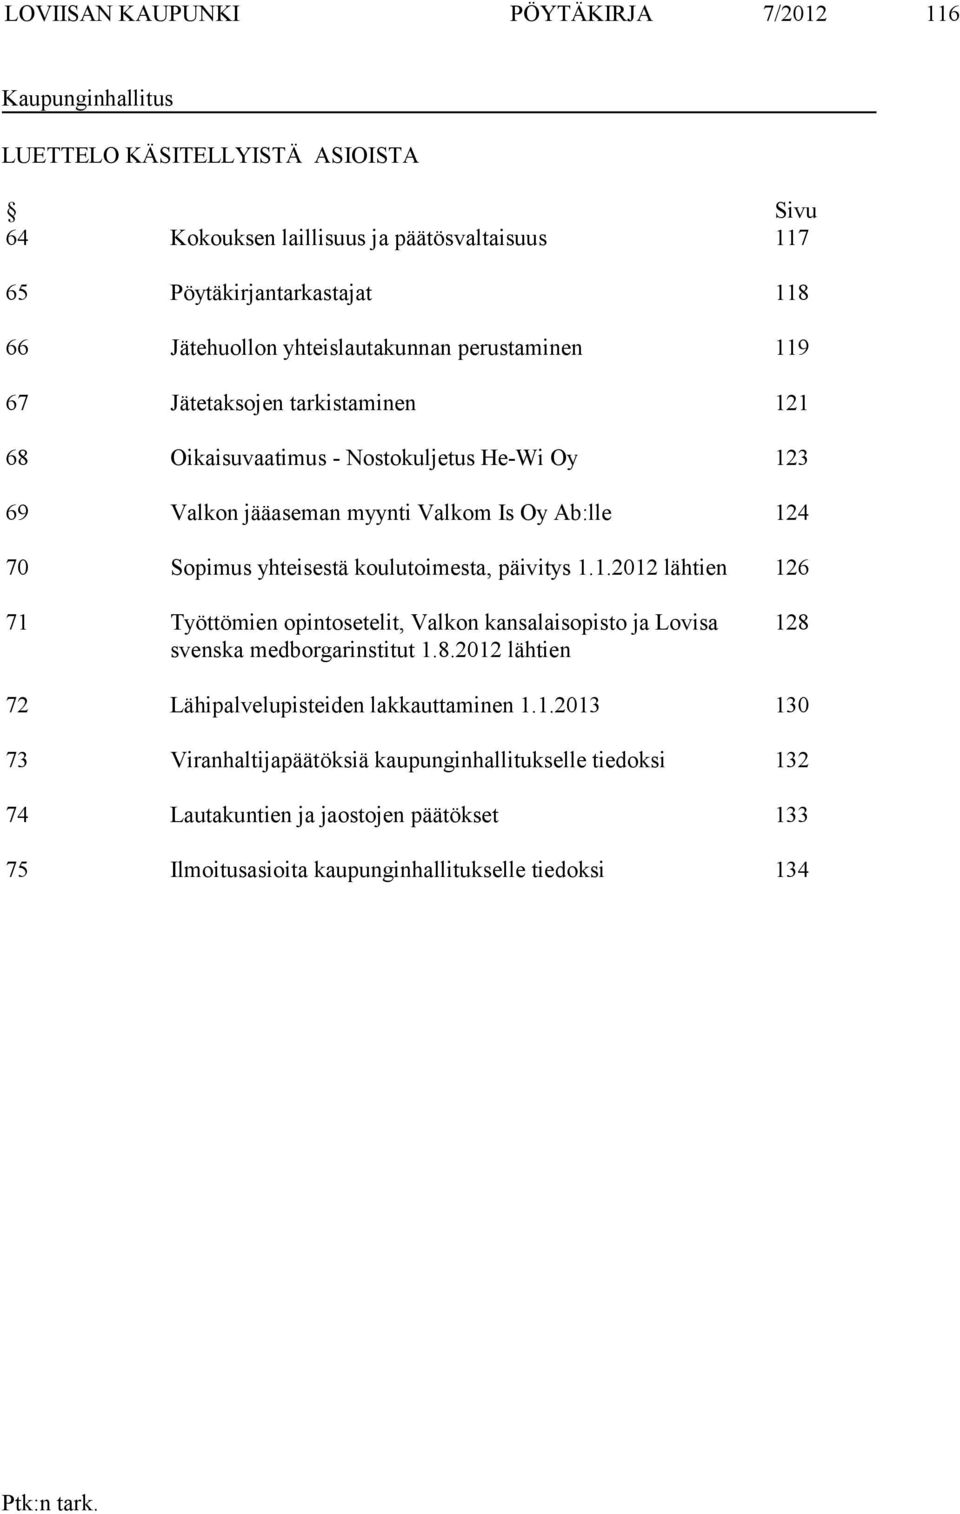 Sopimus yhteisestä koulutoimesta, päivitys 1.1.2012 lähtien 126 71 Työttömien opintosetelit, Valkon kansalaisopisto ja Lovisa svenska medborgarinstitut 1.8.